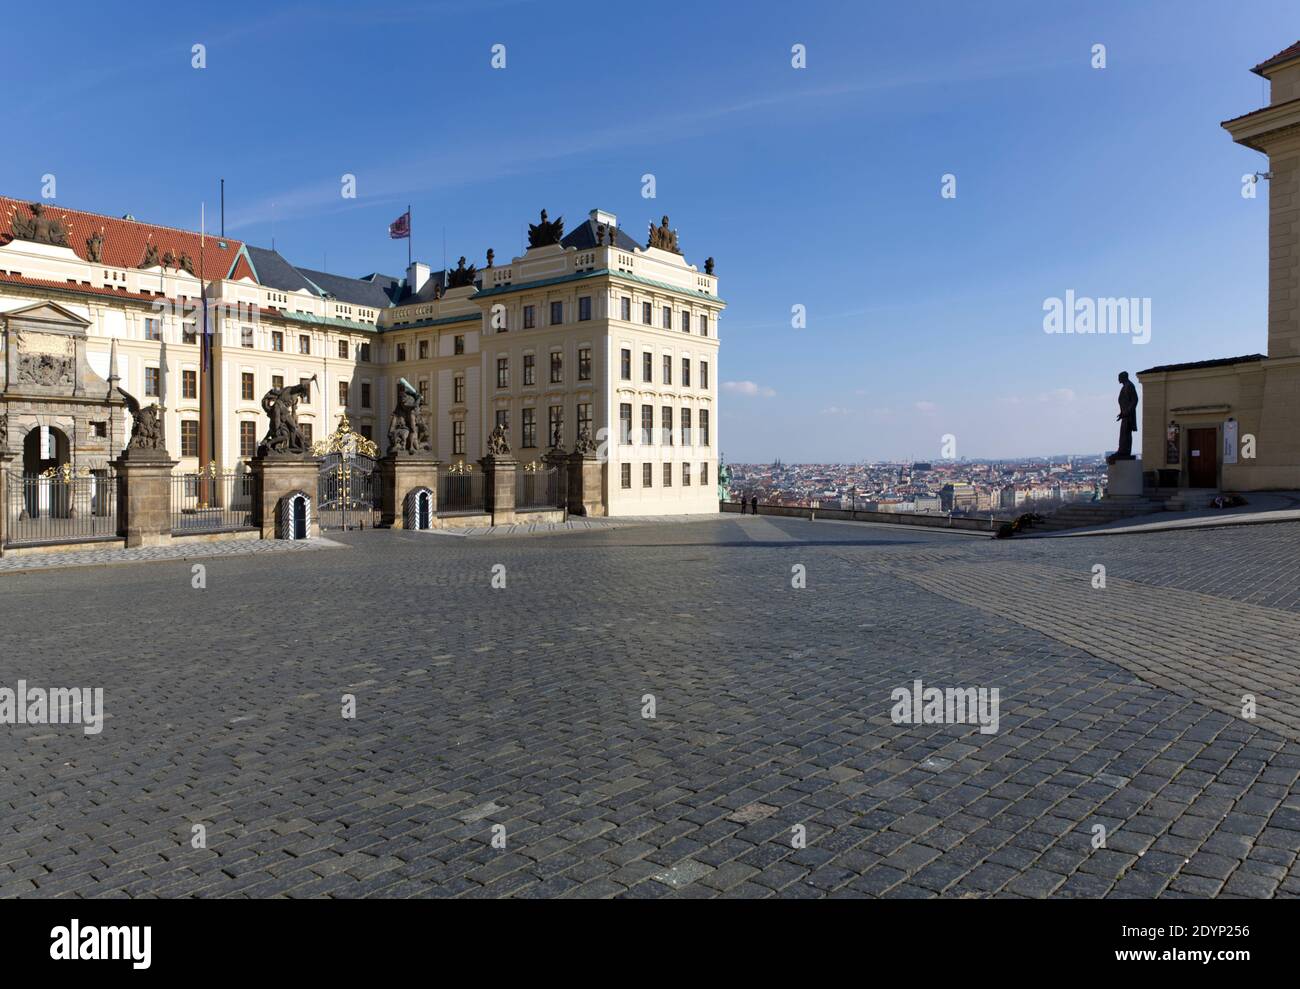 Pohled od Arcibiskupského paláce přes prázdné Hradčanské náměstí na část Pražského hradu, Salmovský palác a vyhlídku na Prahu. Stock Photo